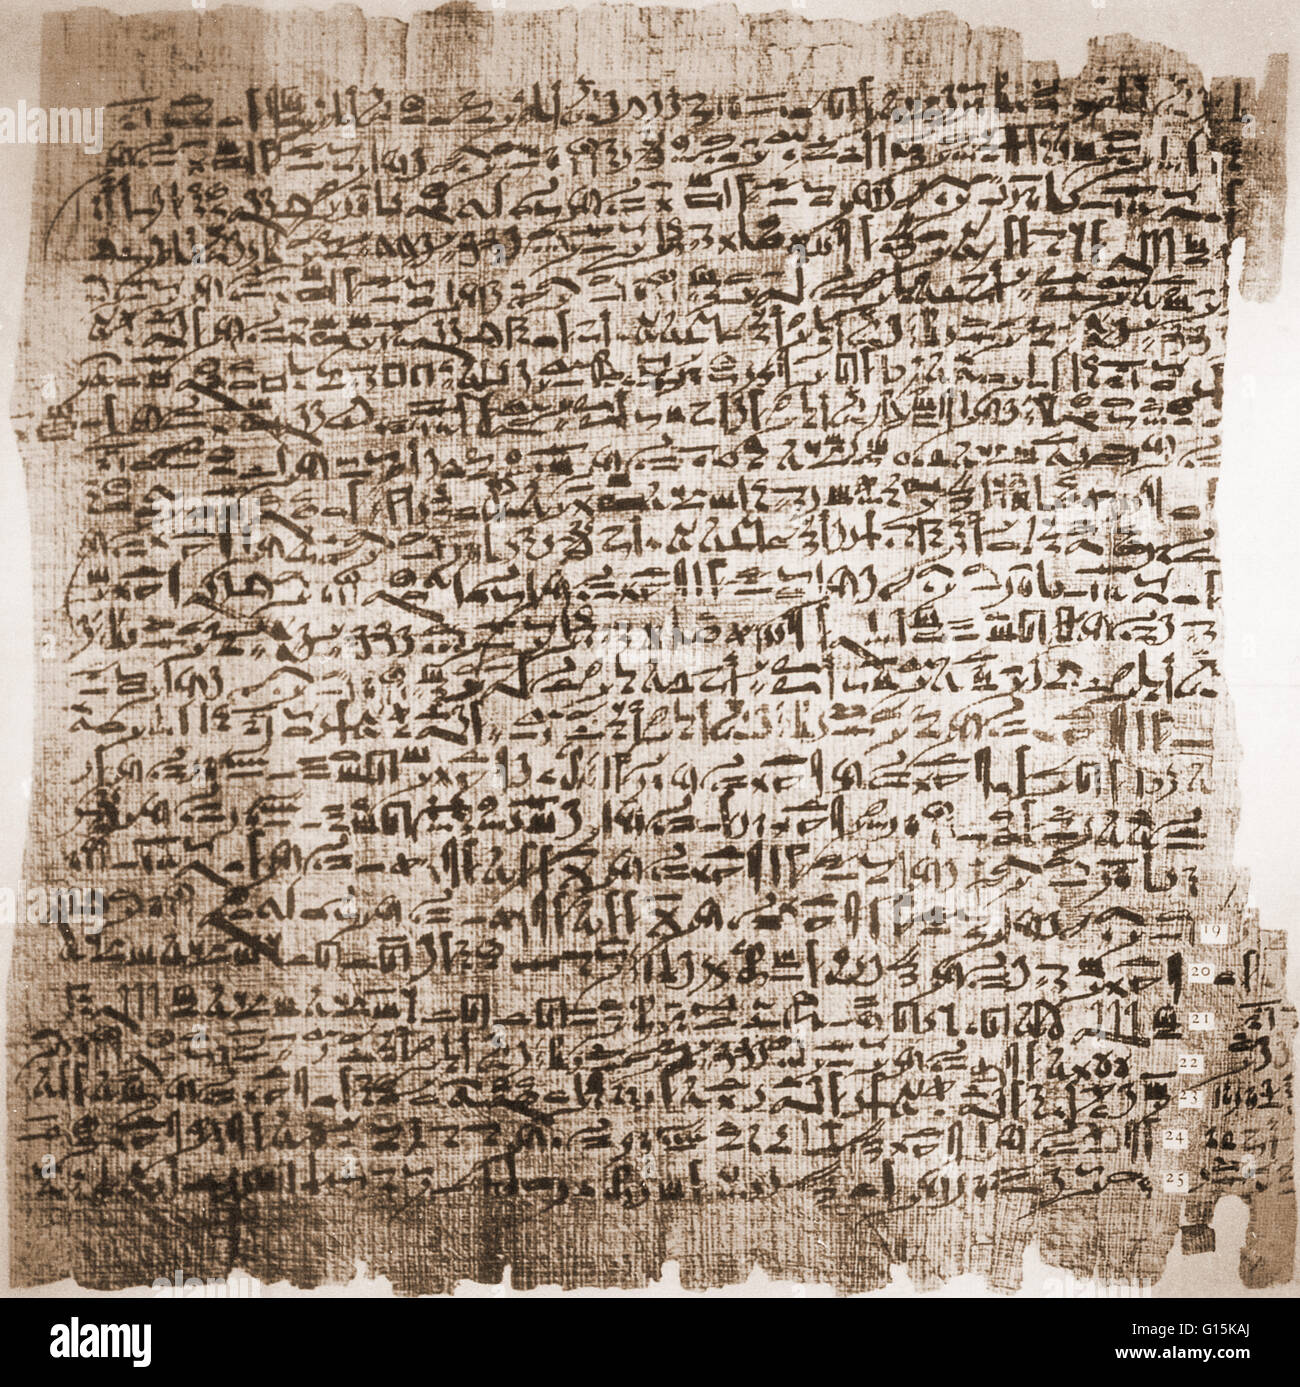 "Fall sechs aus dem Edwin Smith Surgical Papyrus, ca. 1600 v. Chr. Dieses Dokument steht in hieratisch, eine kursive Version des vereinfachten Hierogylphs. Der Fall beschreibt eine klaffende Wunde am Kopf mit zusammengesetzten engagierte Fraktur des Schädels und Bruch des Stockfoto